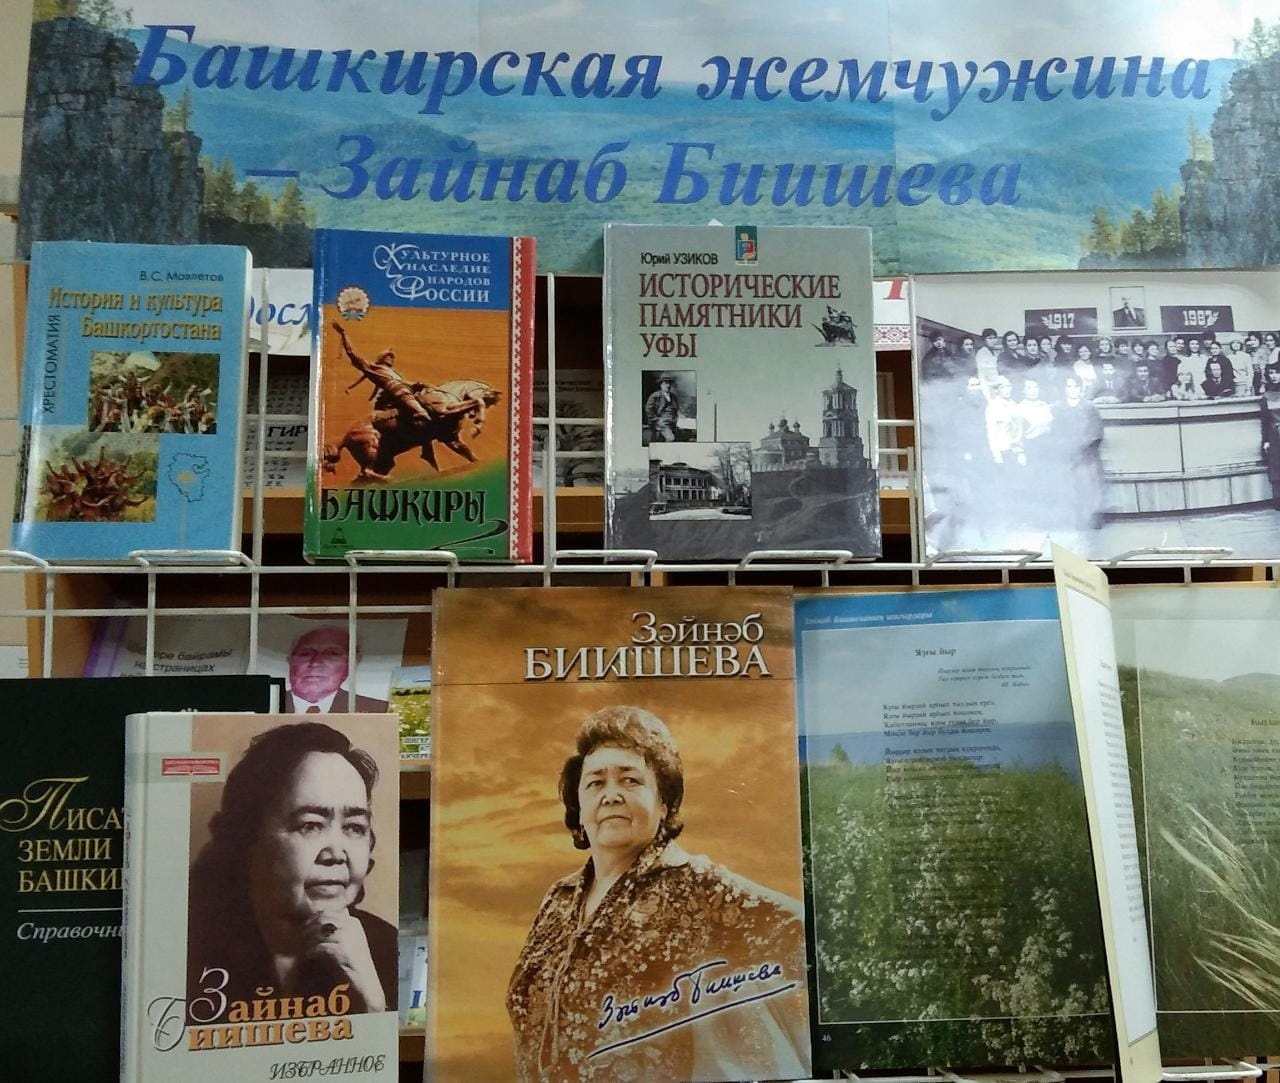 Литературная гостиная памяти Зайнаб Биишевой прошла в Калтасинской районной библиотеке